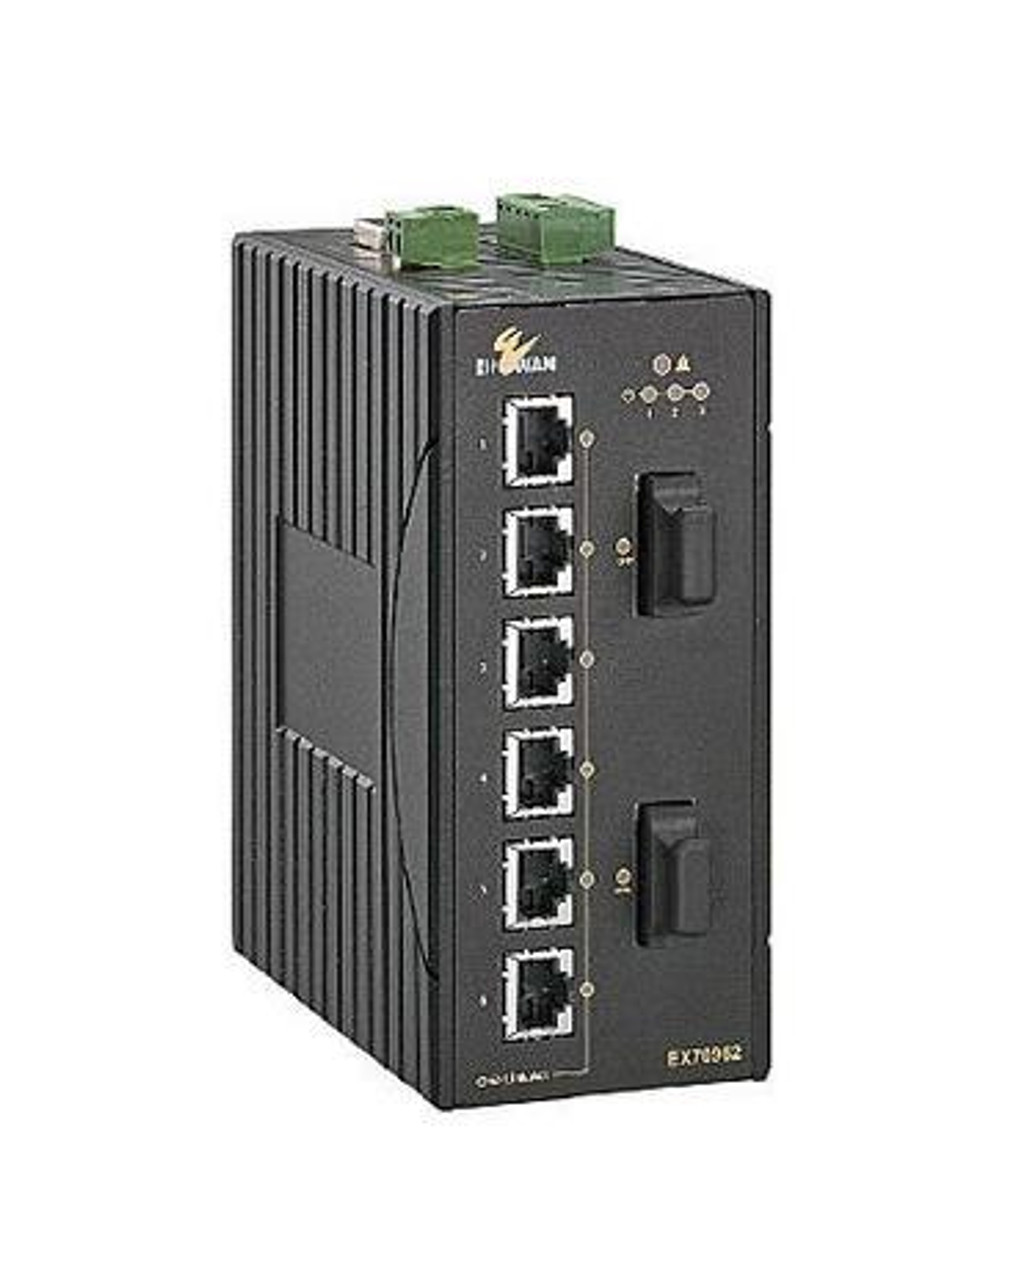 EtherWAN 8-Port 10/100/1000BASE-TX Managed Hardened Ethernet Switch - 8 Ports - Manageable - Gigabit Ethernet - 10/100/1000Base-TX - 2 Layer